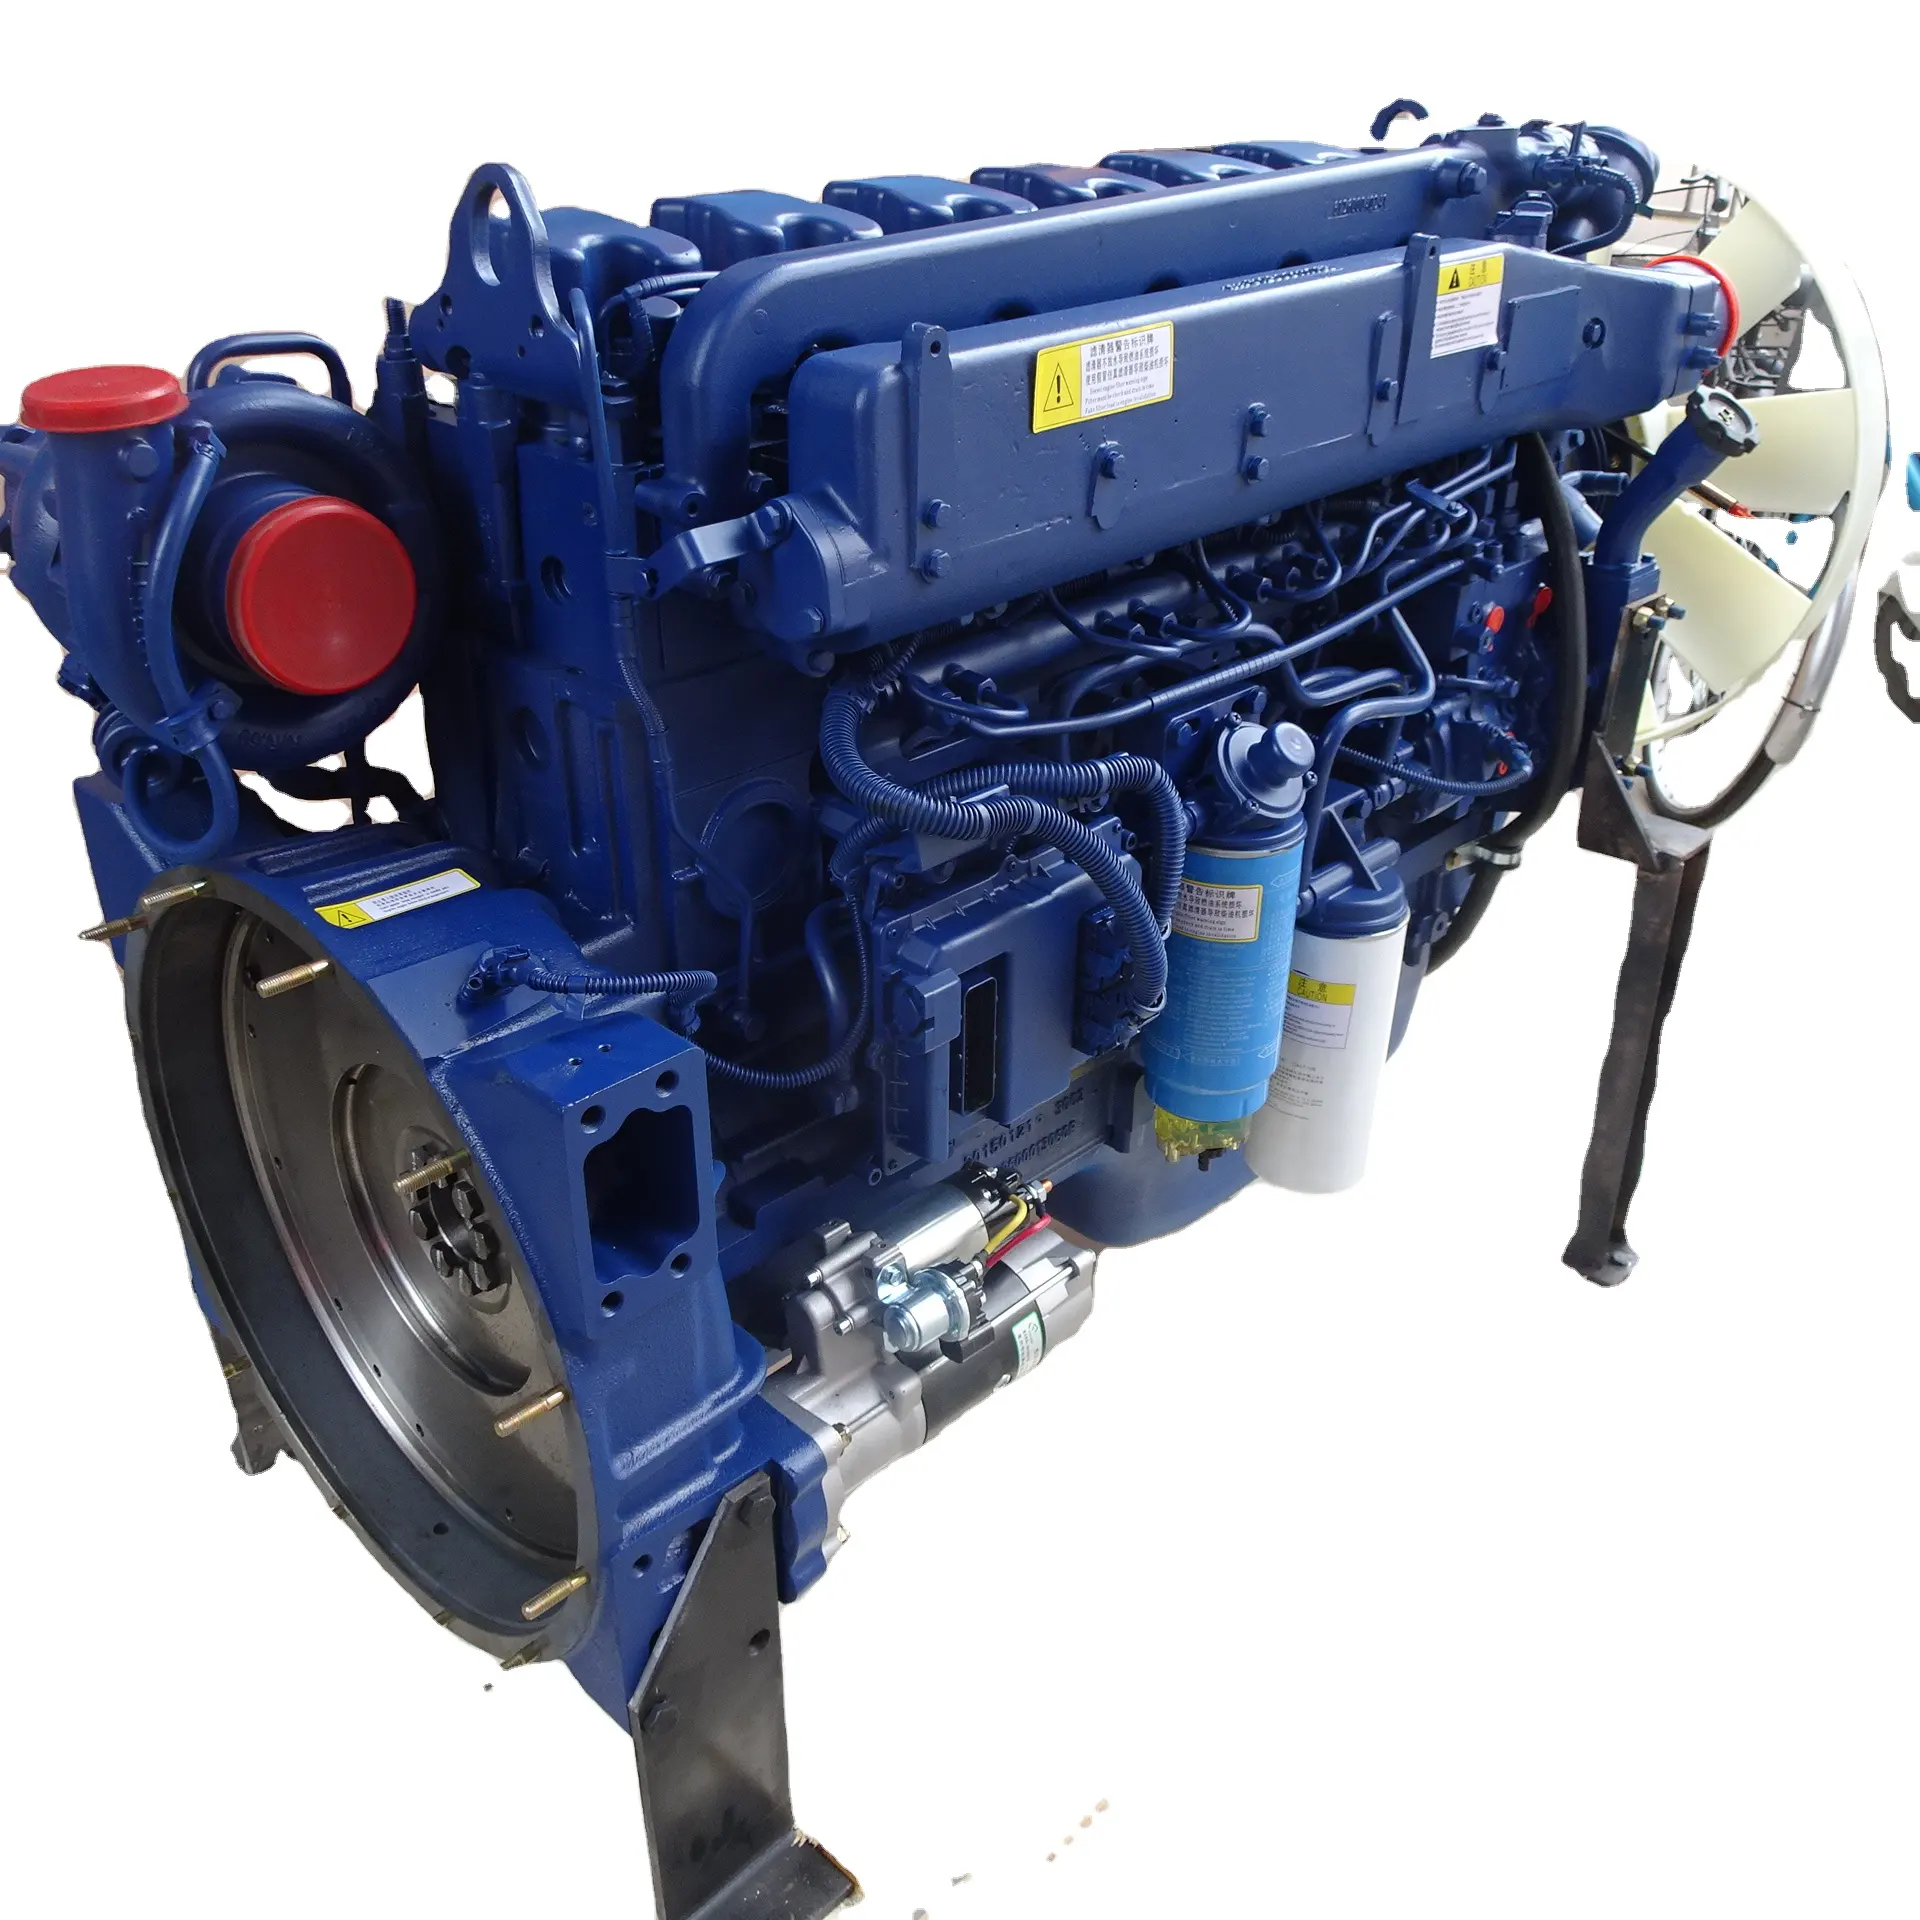 Digunakan Pada Mesin Diesel JMC Hitam Produk Berkualitas Tinggi Mesin Diesel